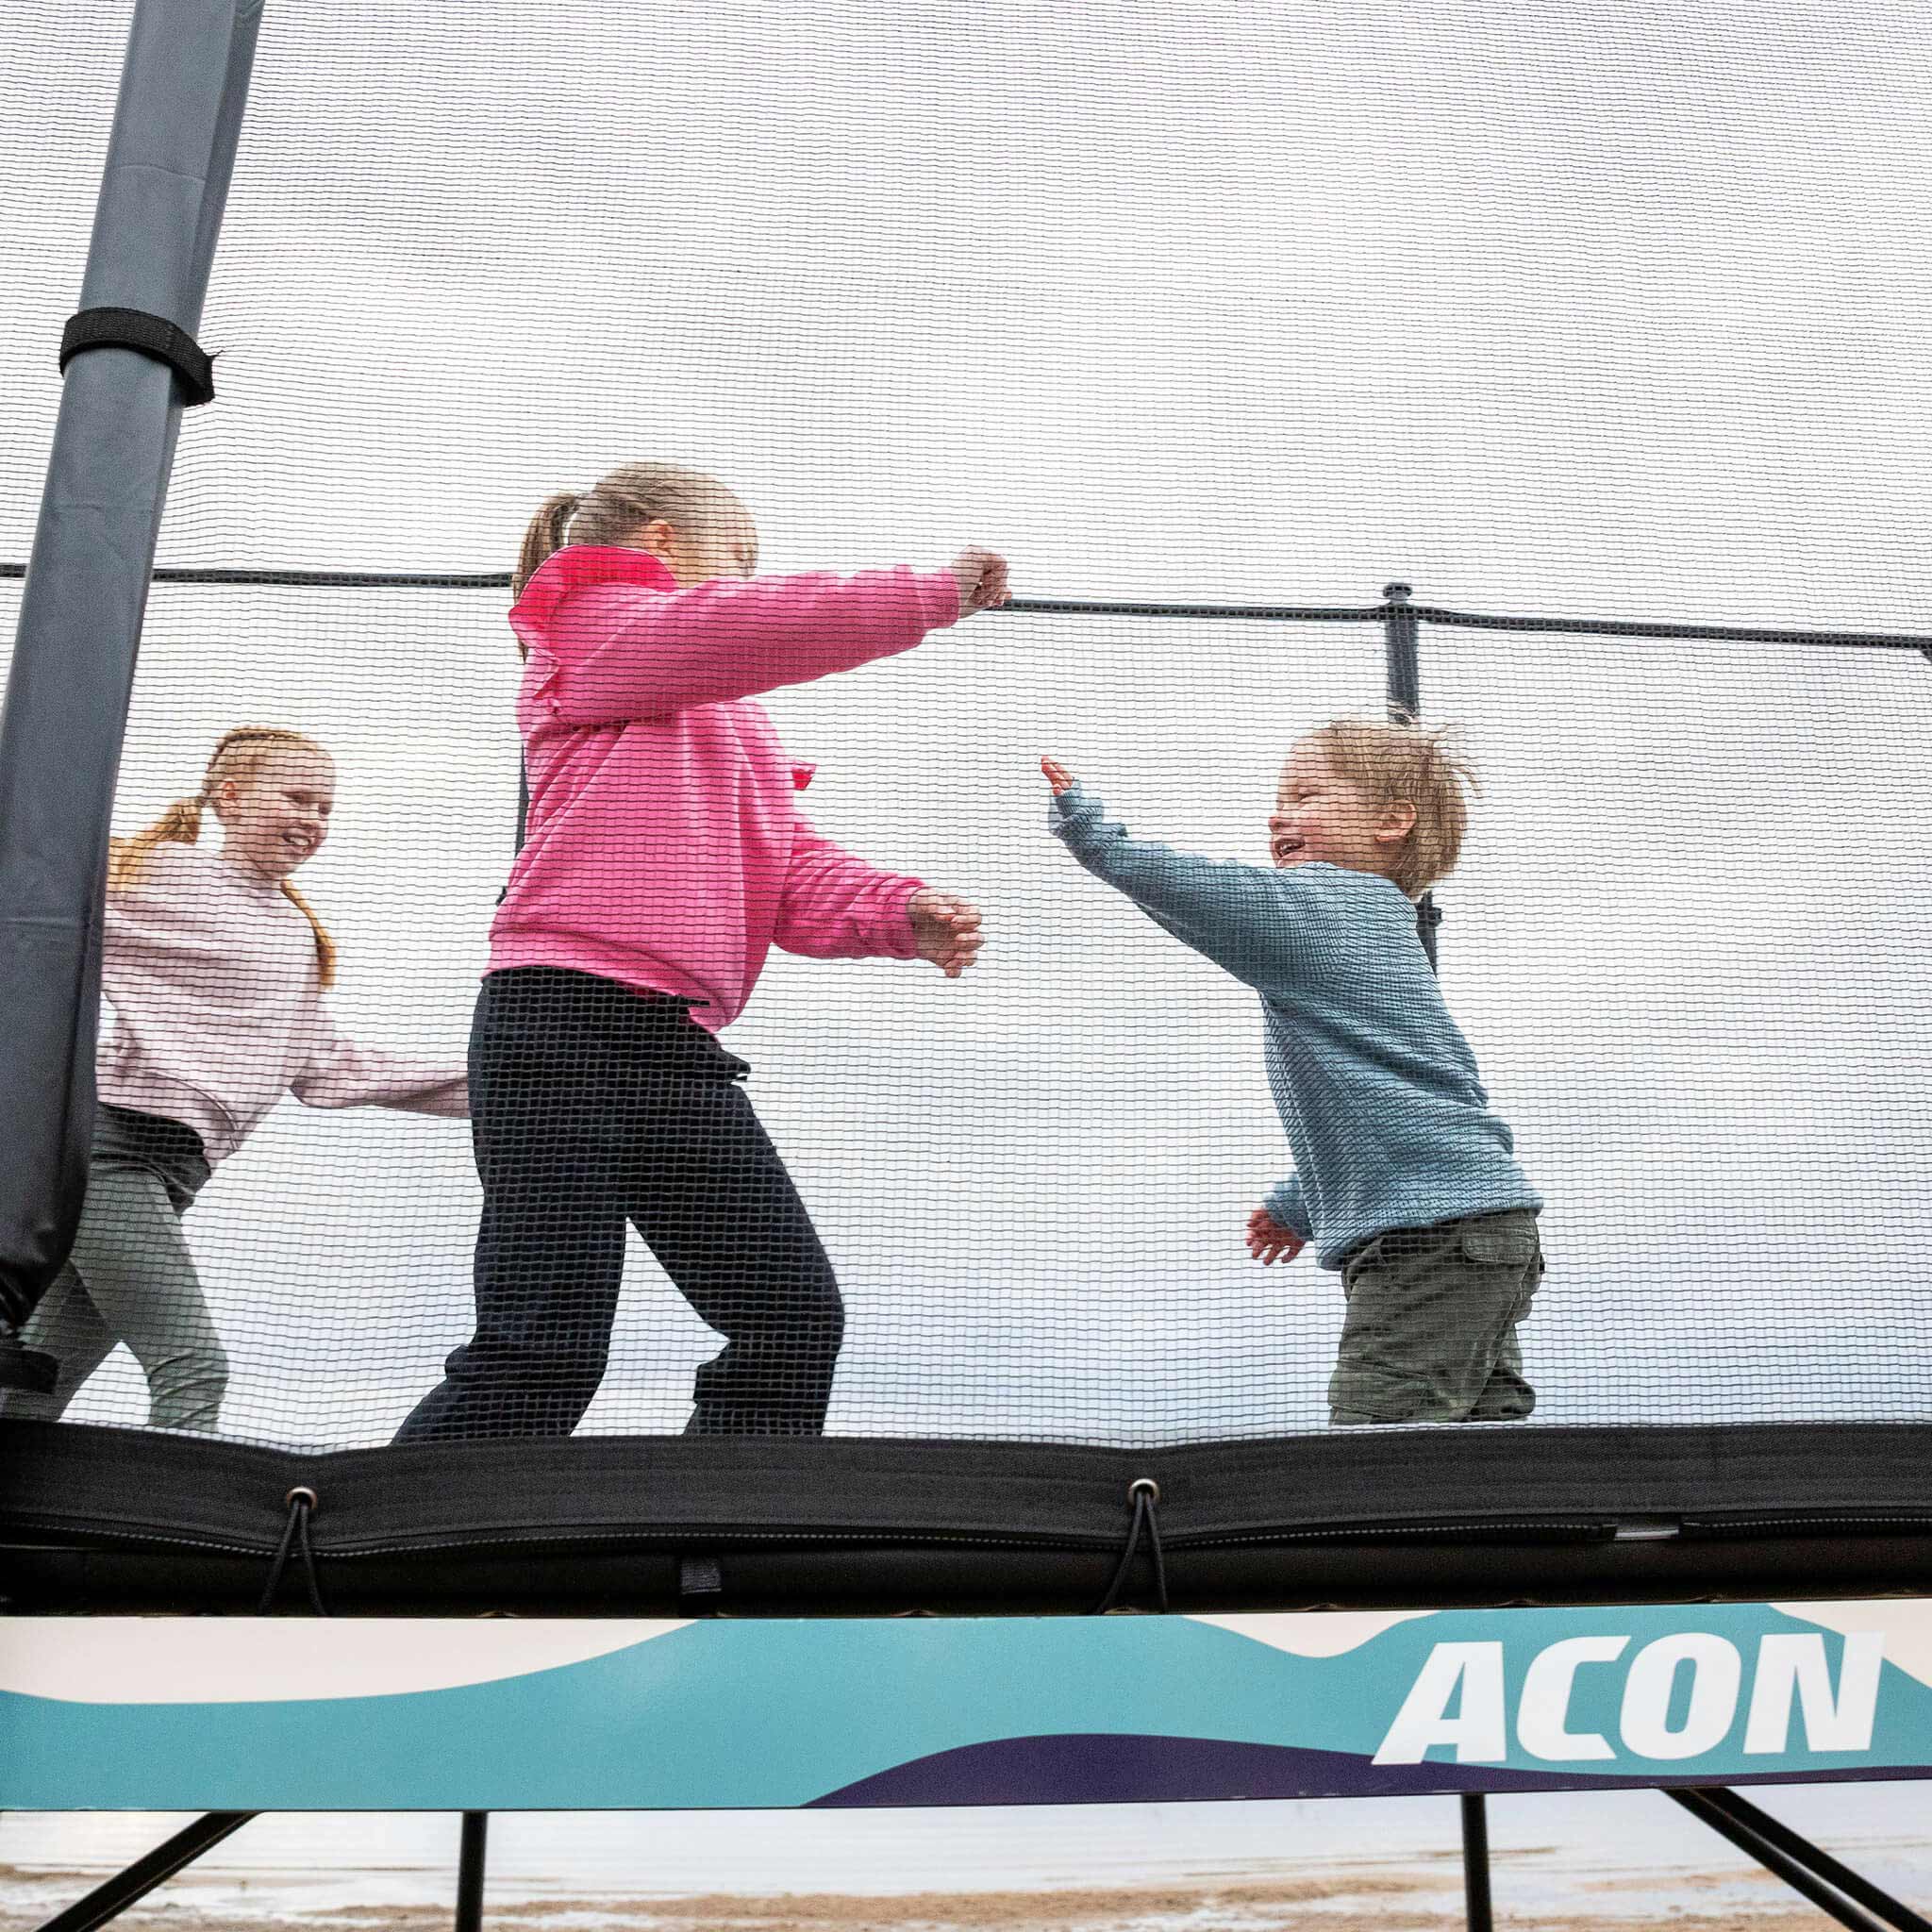 Kolme lasta leikkii Acon X -trampoliinilla.